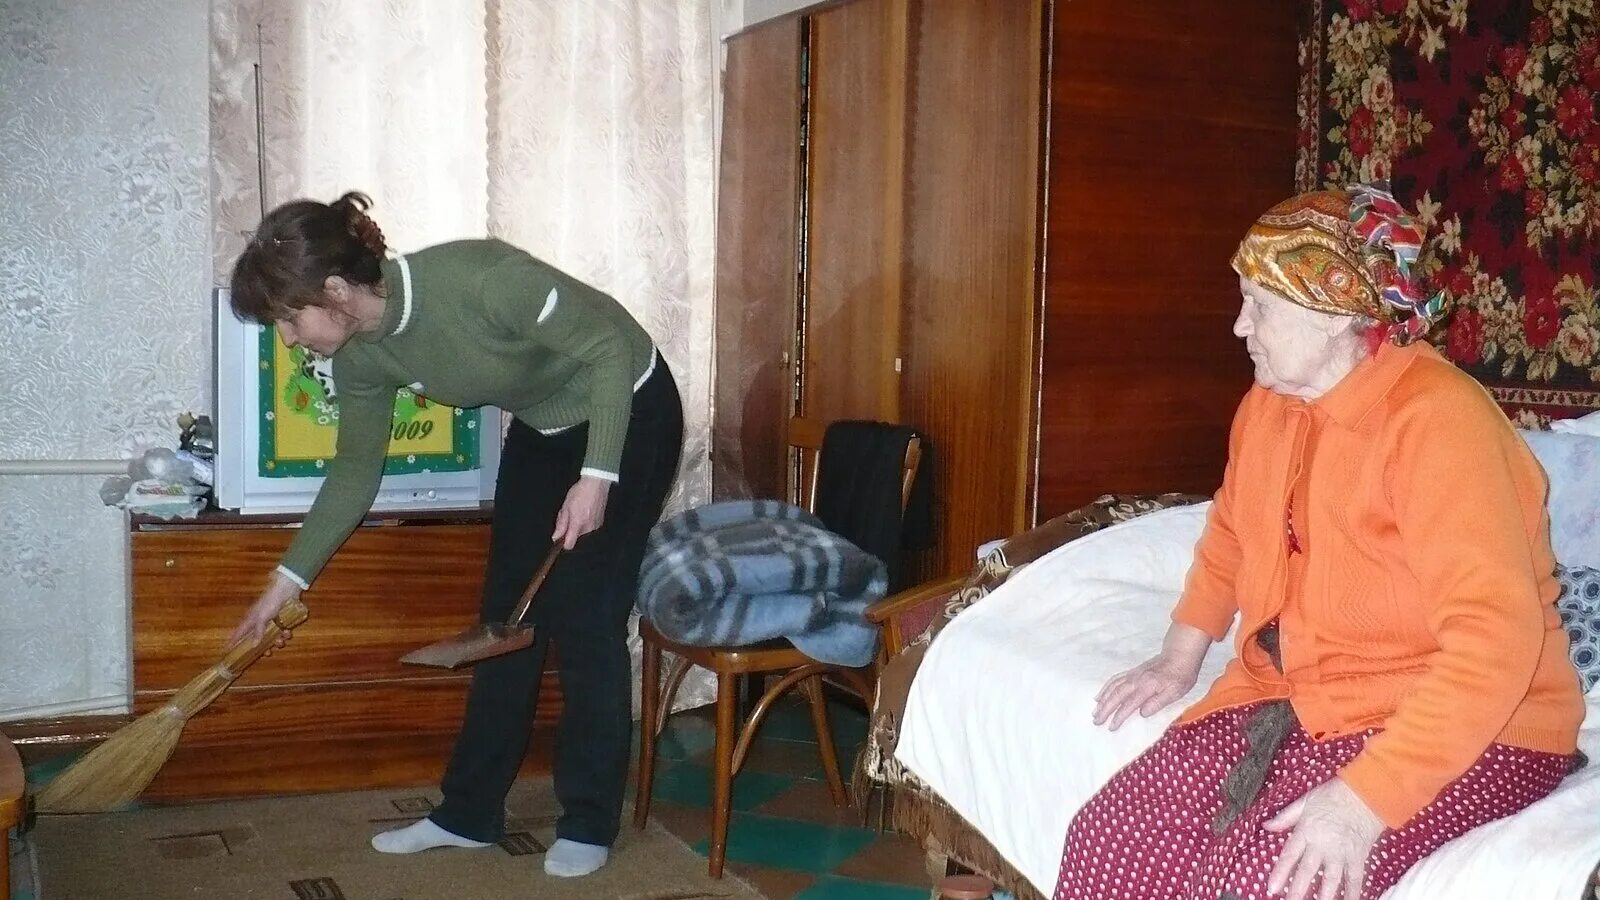 Бабушке помогала по дому. Оказание помощи пожилым людям. Социальная помощь пожилым людям. Социальный работник. Убираться в доме пожилым людям.